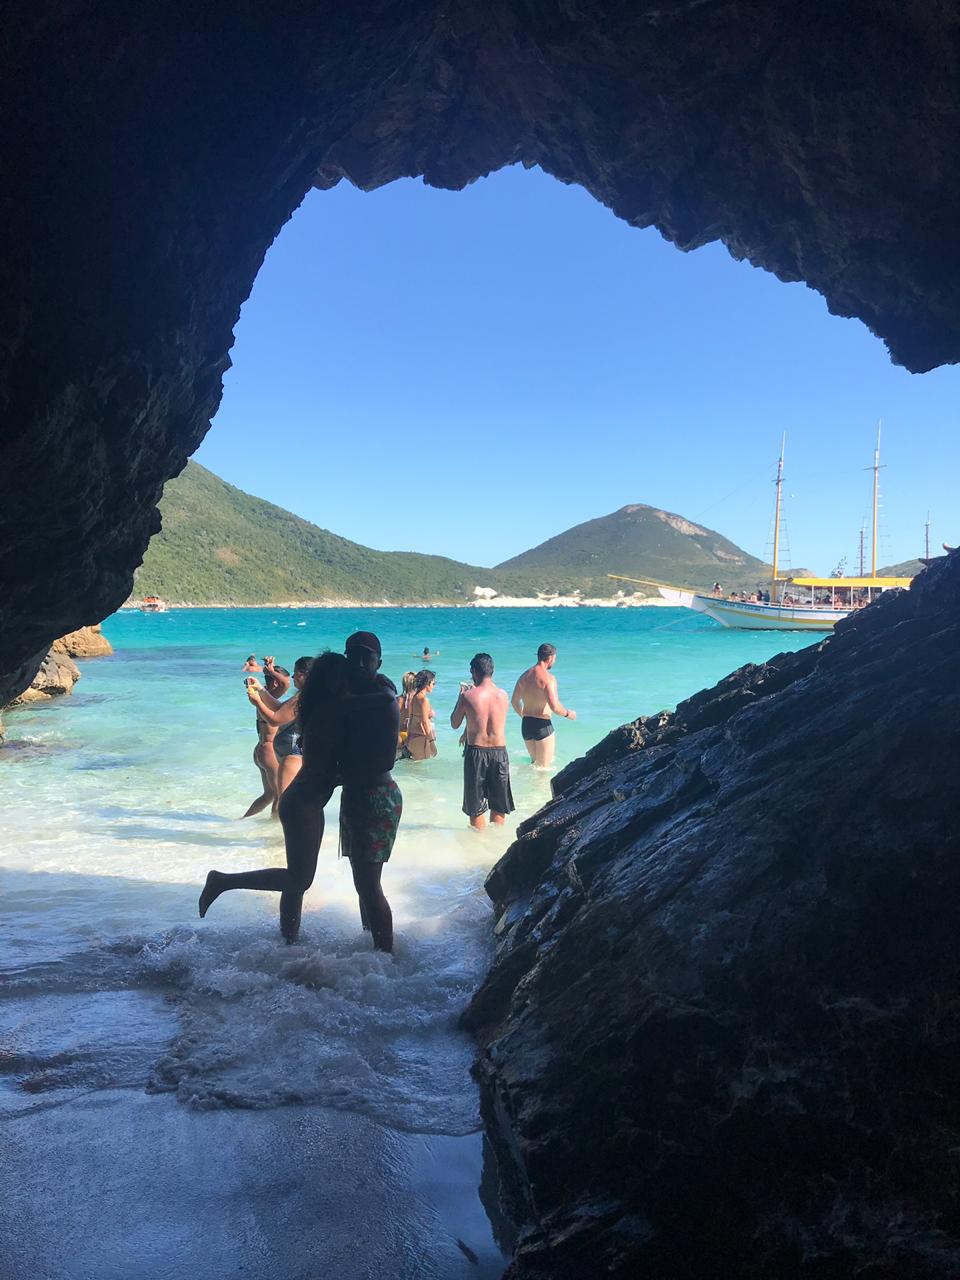 Casal abraçado posando pra foto com a gruta formando uma moldura na foto, mar e ilha do farol ao fundo